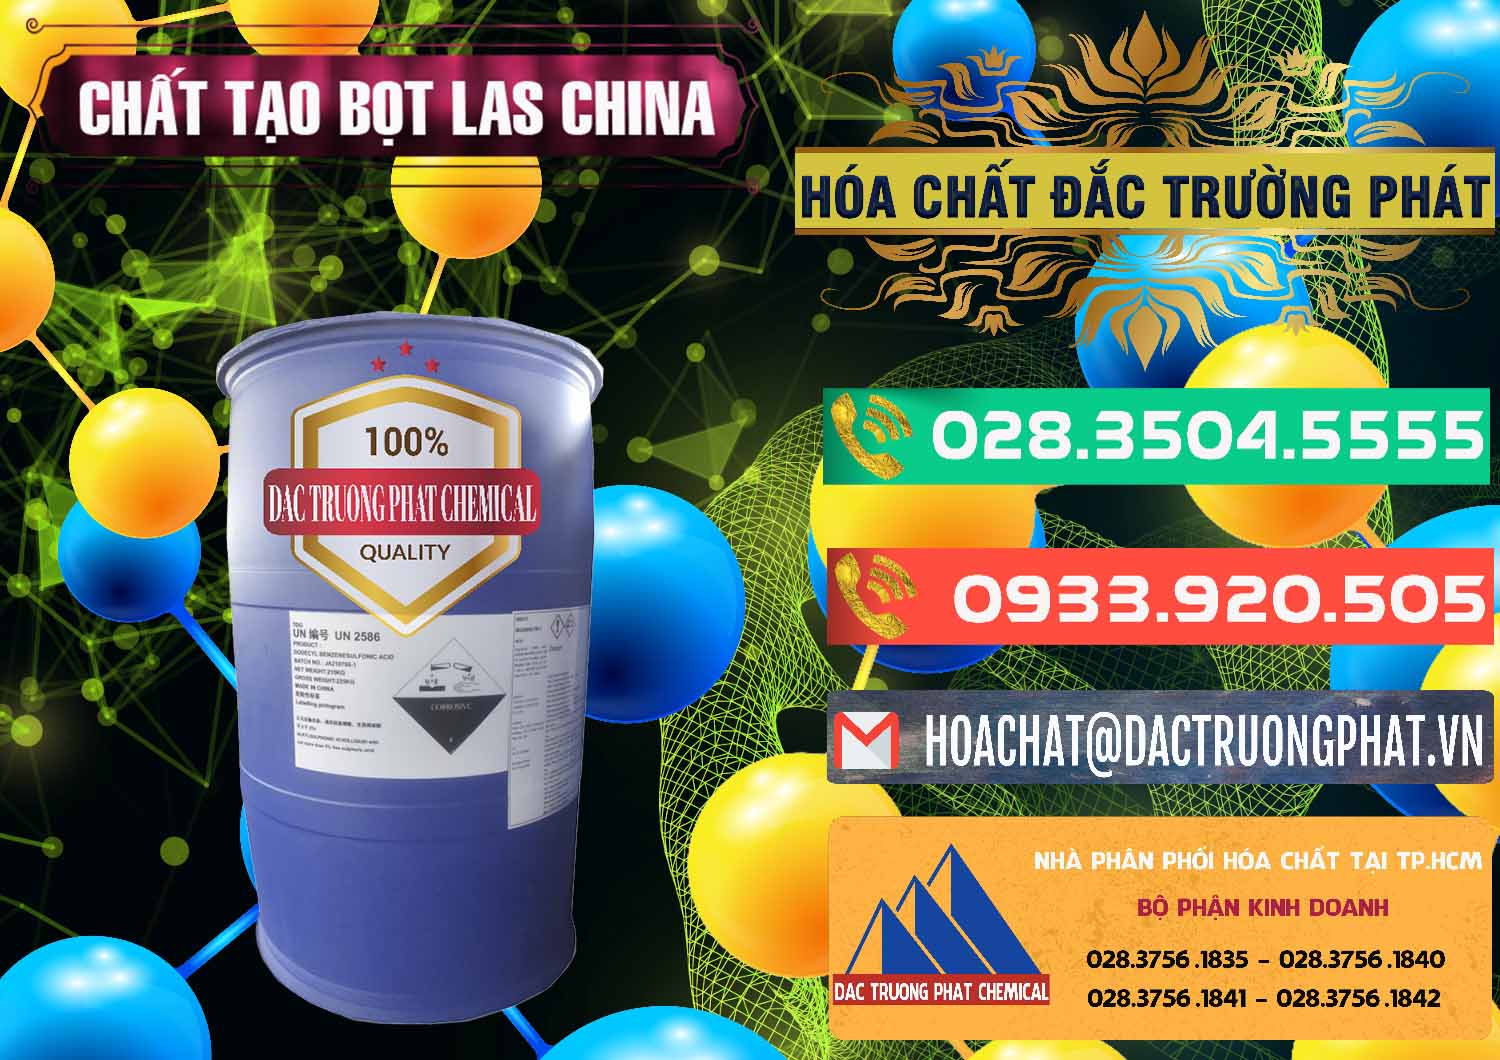 Đơn vị chuyên bán và phân phối Chất tạo bọt Las Trung Quốc China - 0451 - Đơn vị chuyên cung cấp & nhập khẩu hóa chất tại TP.HCM - congtyhoachat.com.vn